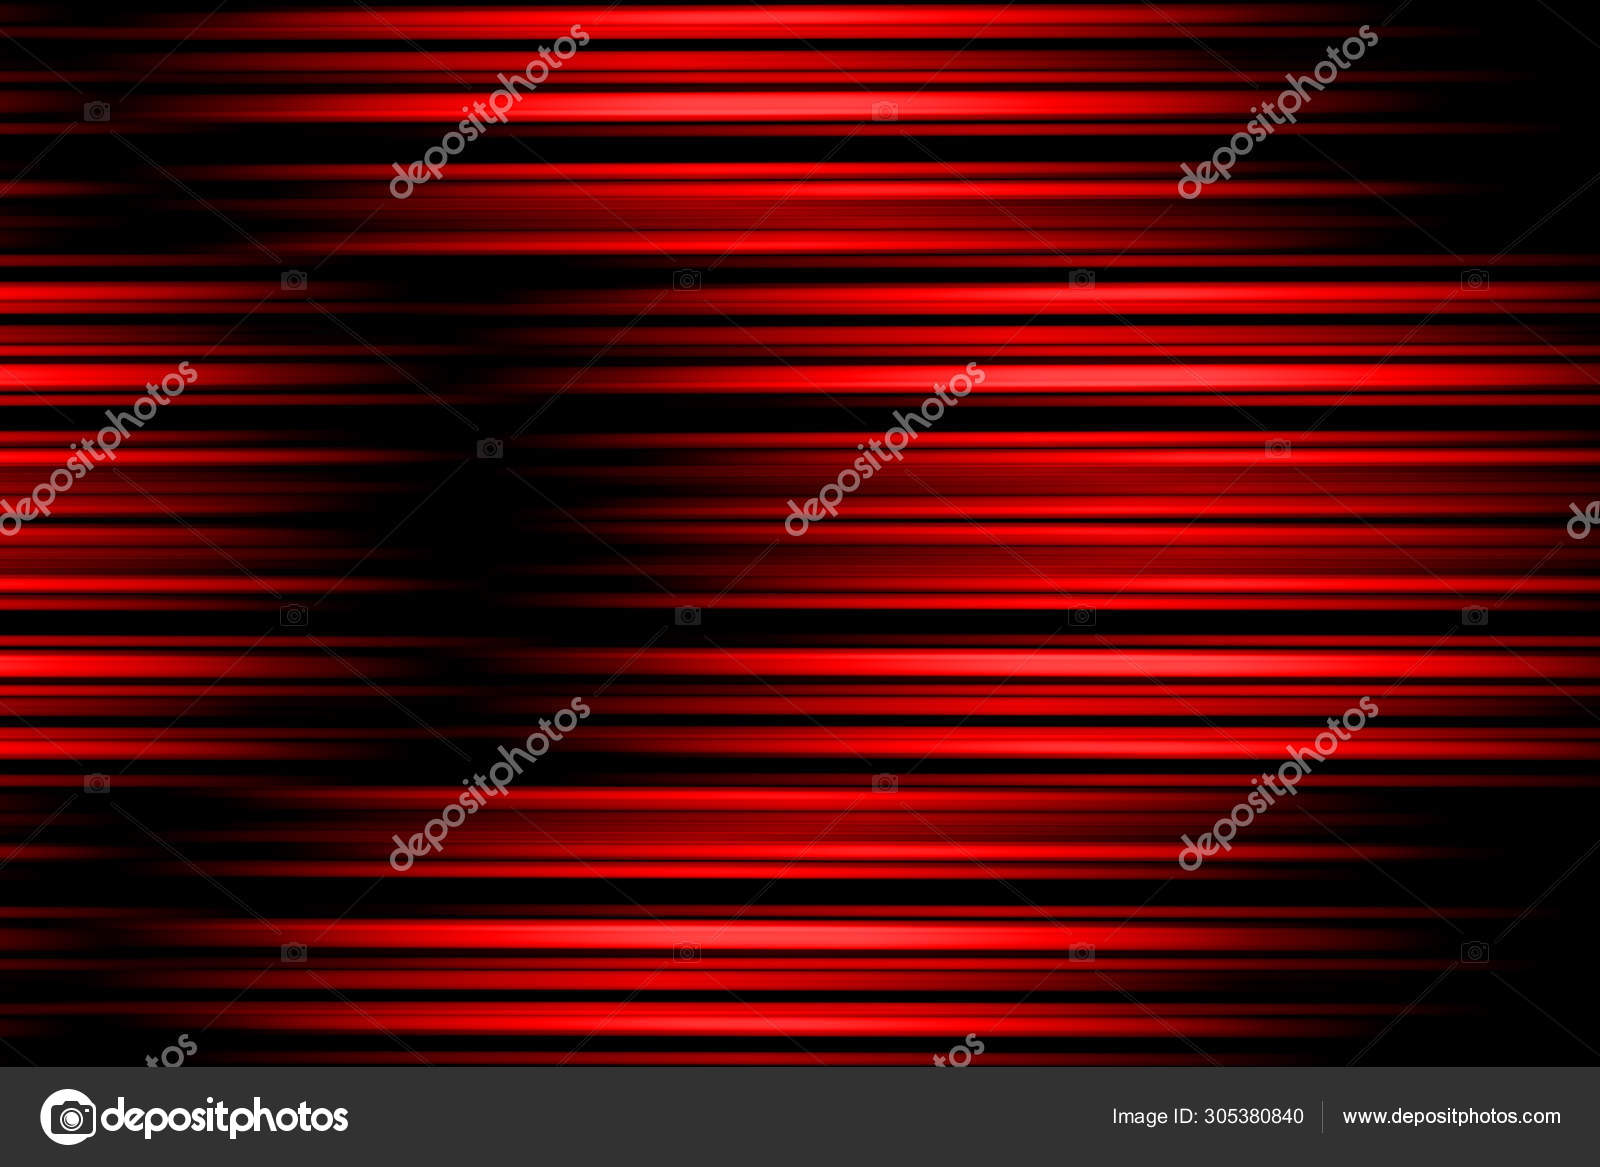 Hình nền đỏ đen trừu tượng mang đến sự hiện đại và tinh tế cho thiết bị của bạn. Tập trung vào sự cân bằng giữa hai màu sắc độc đáo để tạo ra một khung cảnh độc đáo và thu hút ánh nhìn.